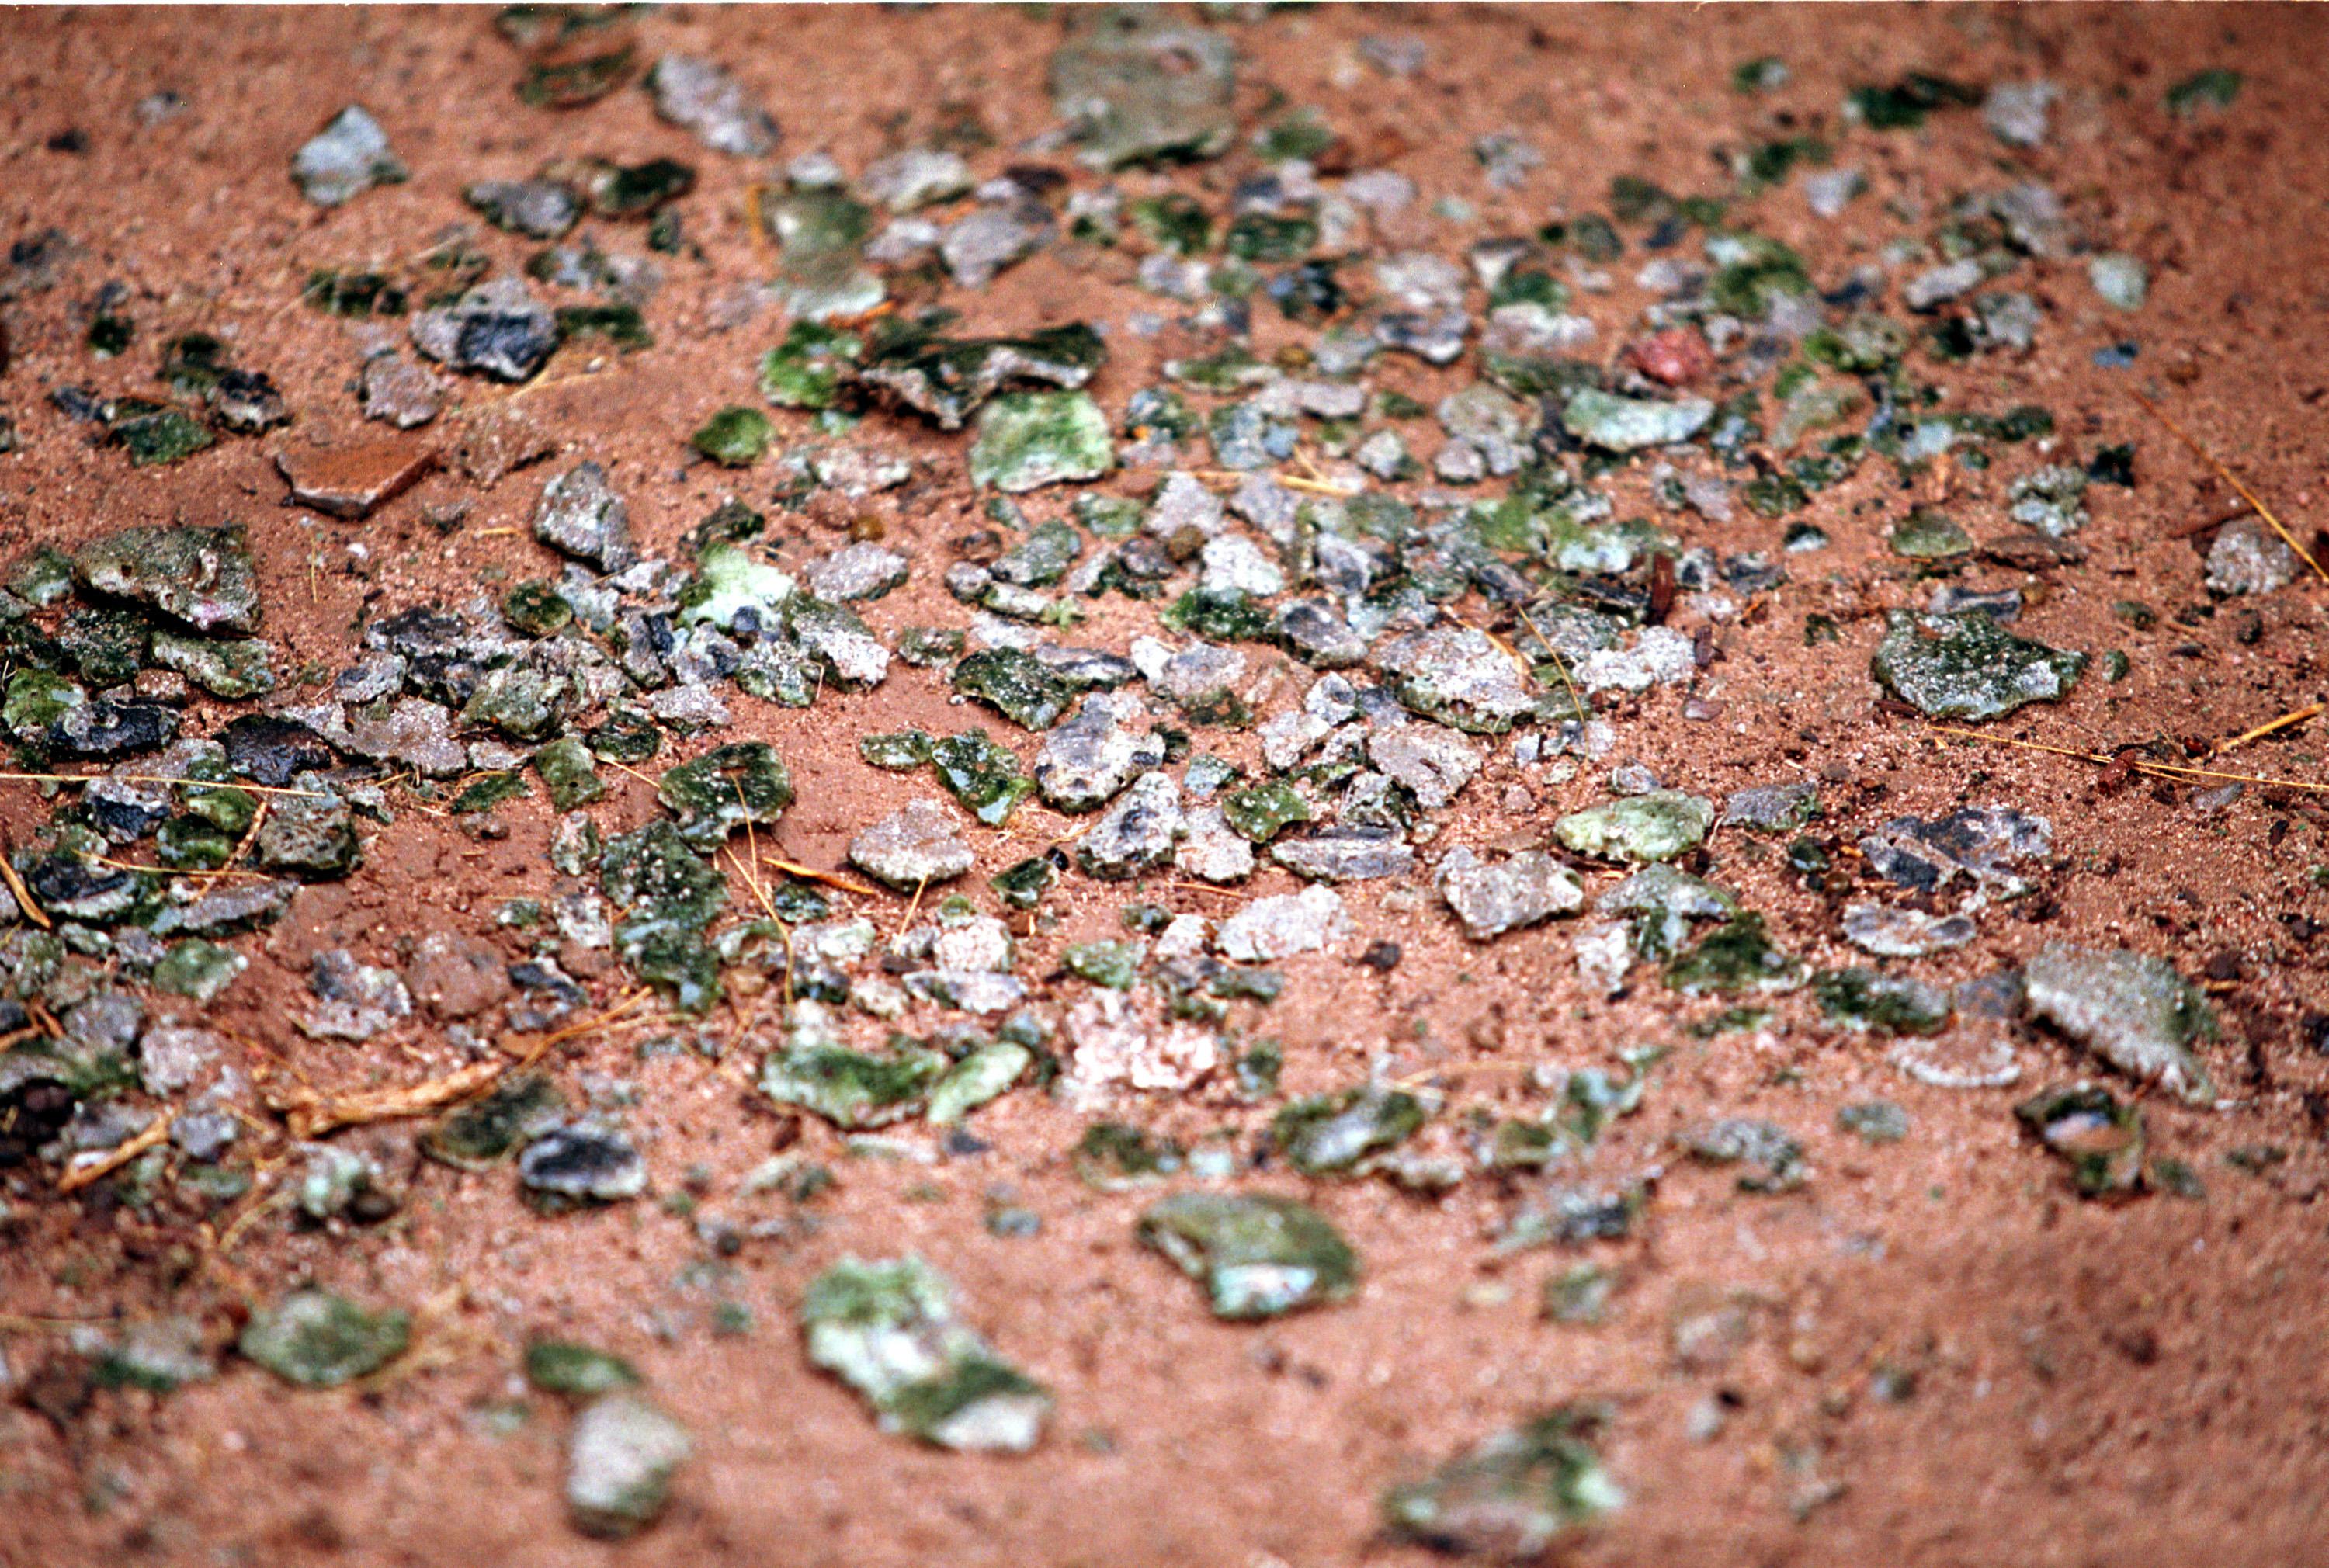 Fragmentos de trinitita en el suelo